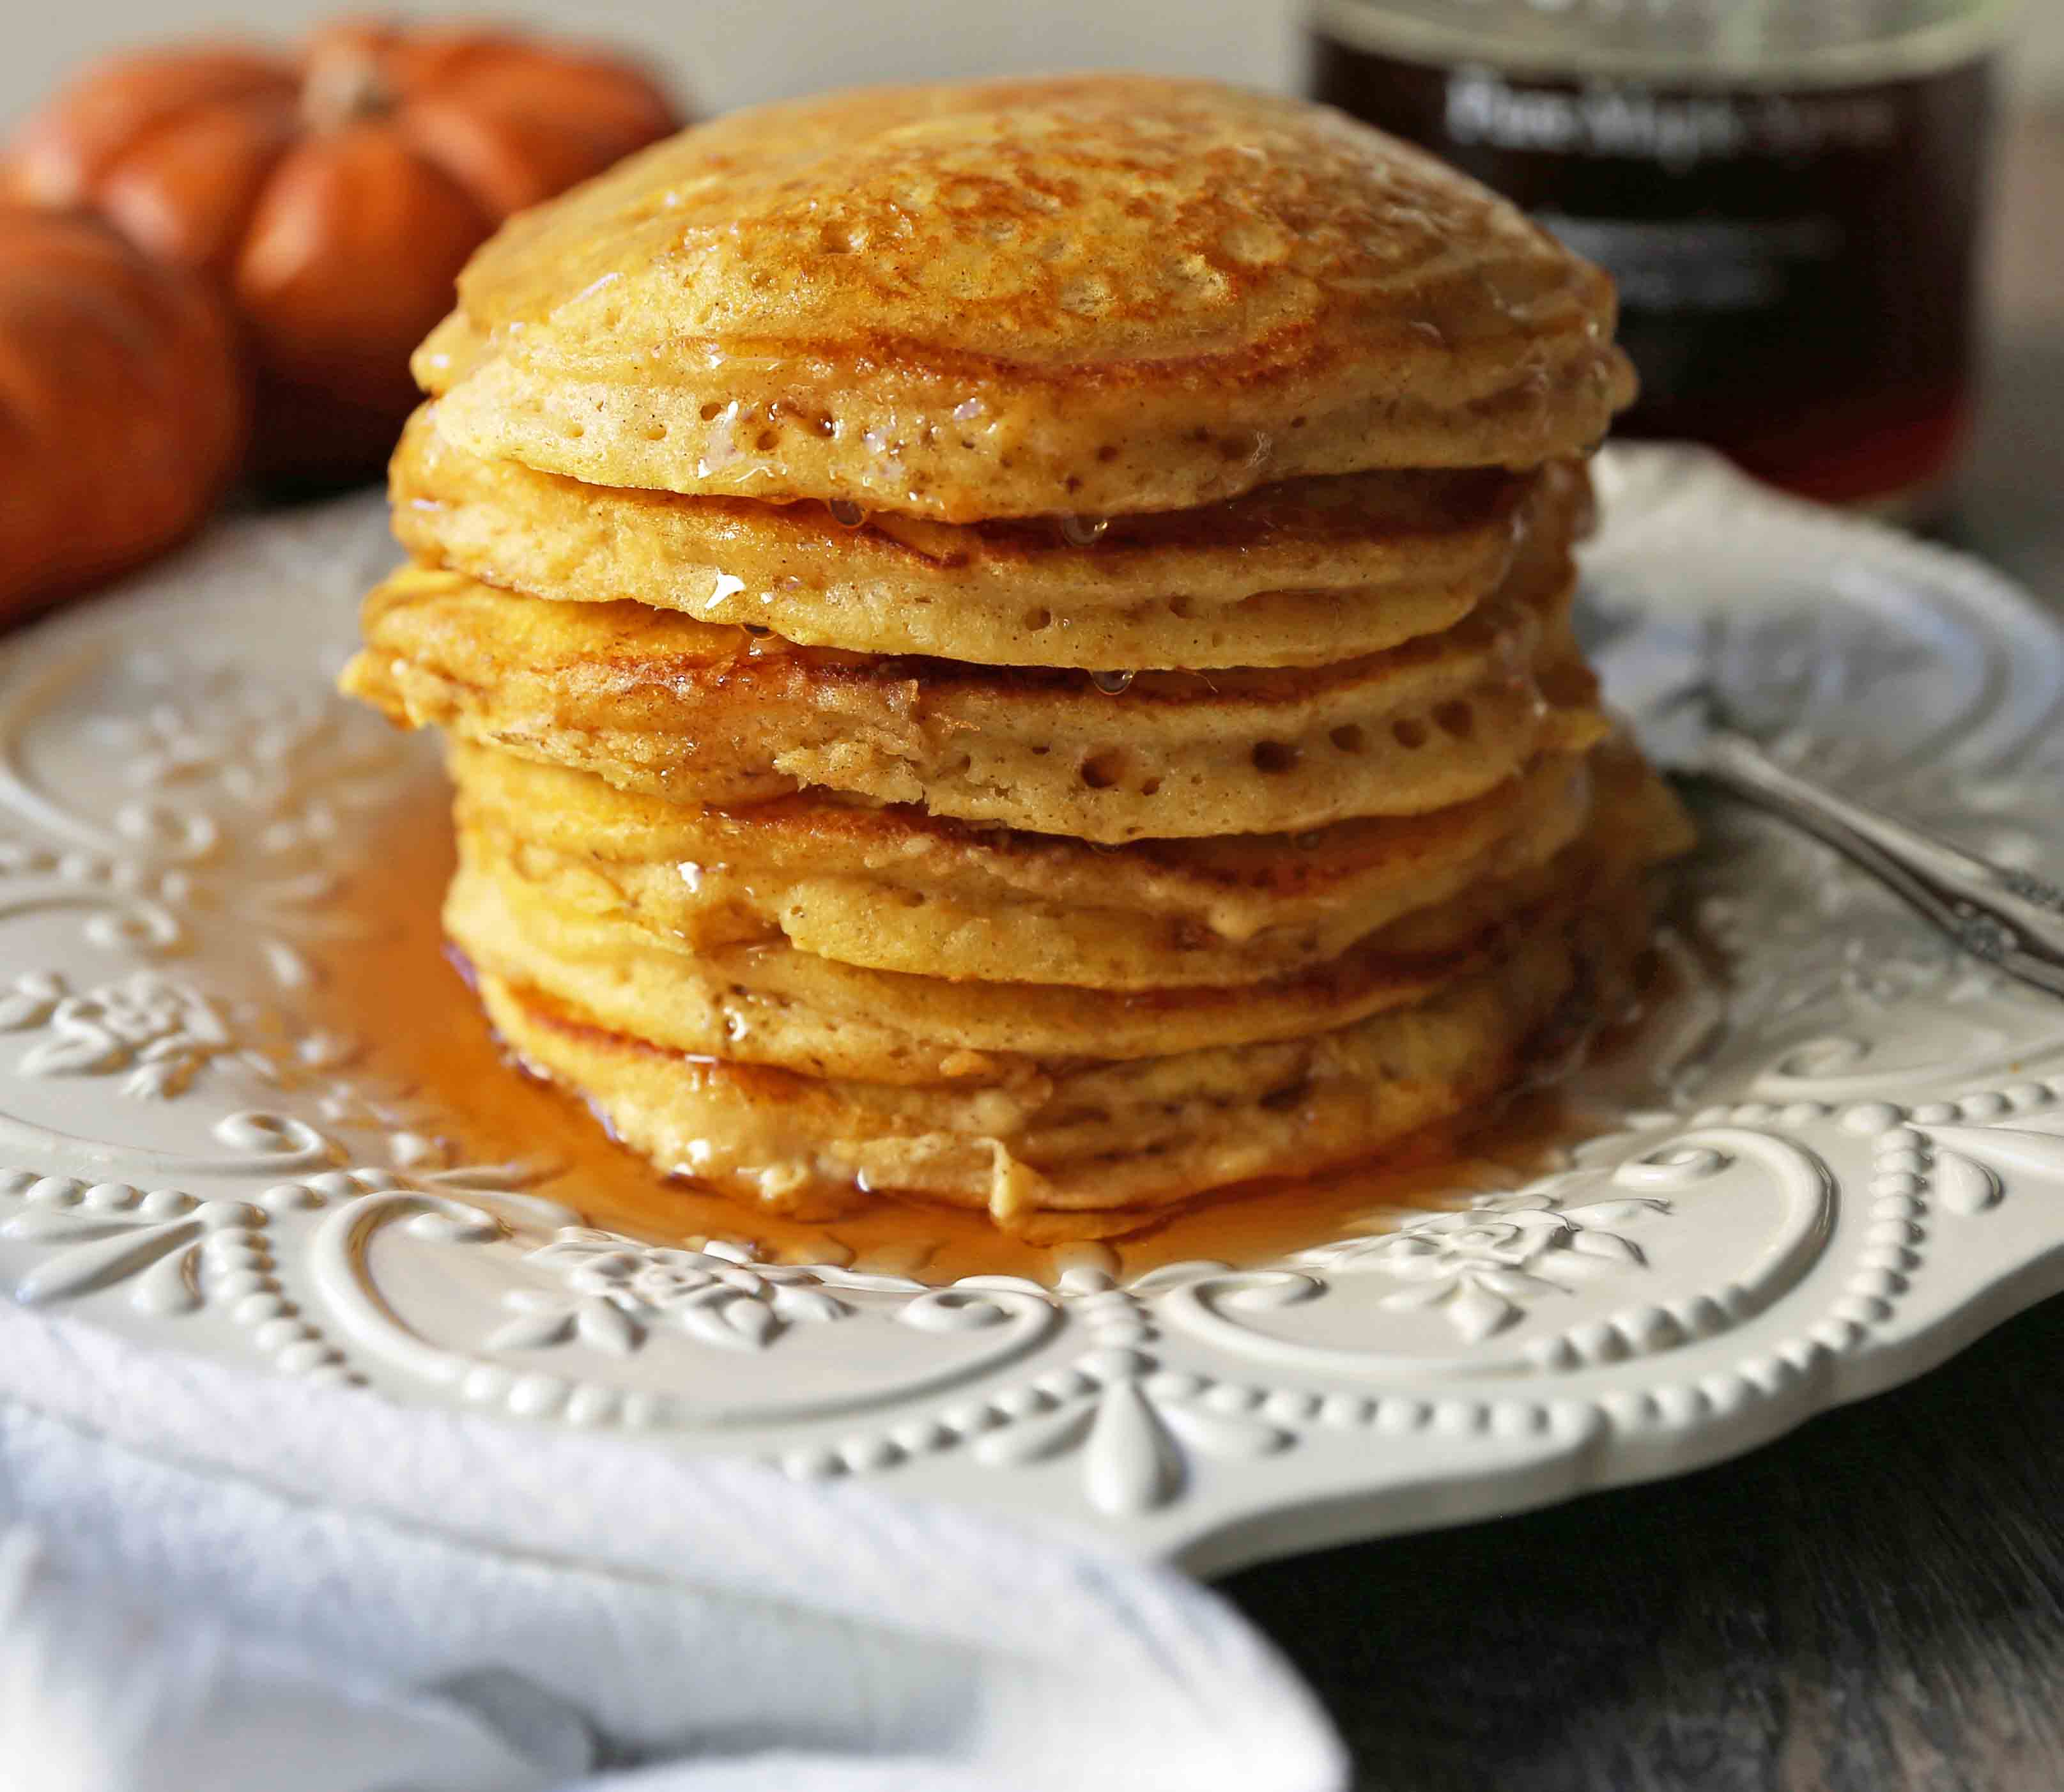 The BEST Pumpkin Pancakes. Light, fluffy, airy, and creamy pumpkin spiced pancakes. The perfect Fall breakfast. www.modernhoney.com #pumpkin #pumpkinpancakes #pumpkinrecipes #pumpkinbreakfast #fallbreakfast #pumpkinspice